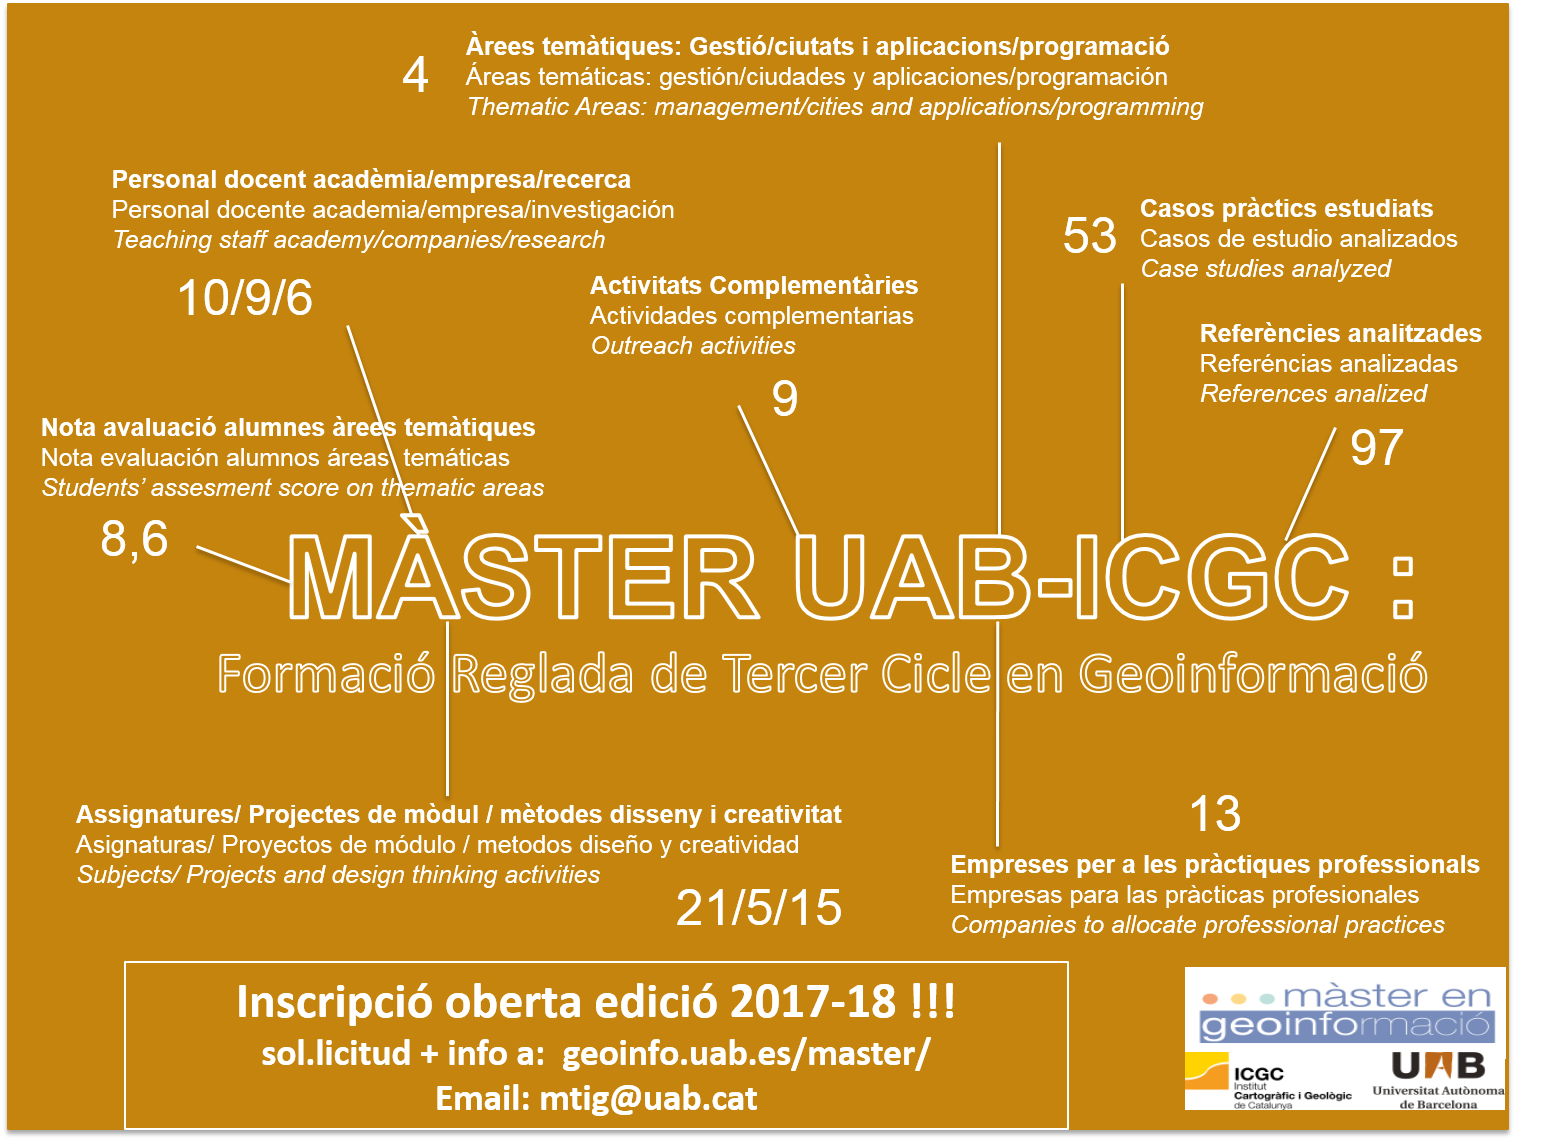 Informació resumida sobre dates, activitats i recursos per a l'edició 2017-2018 del màster en Geoinformació.